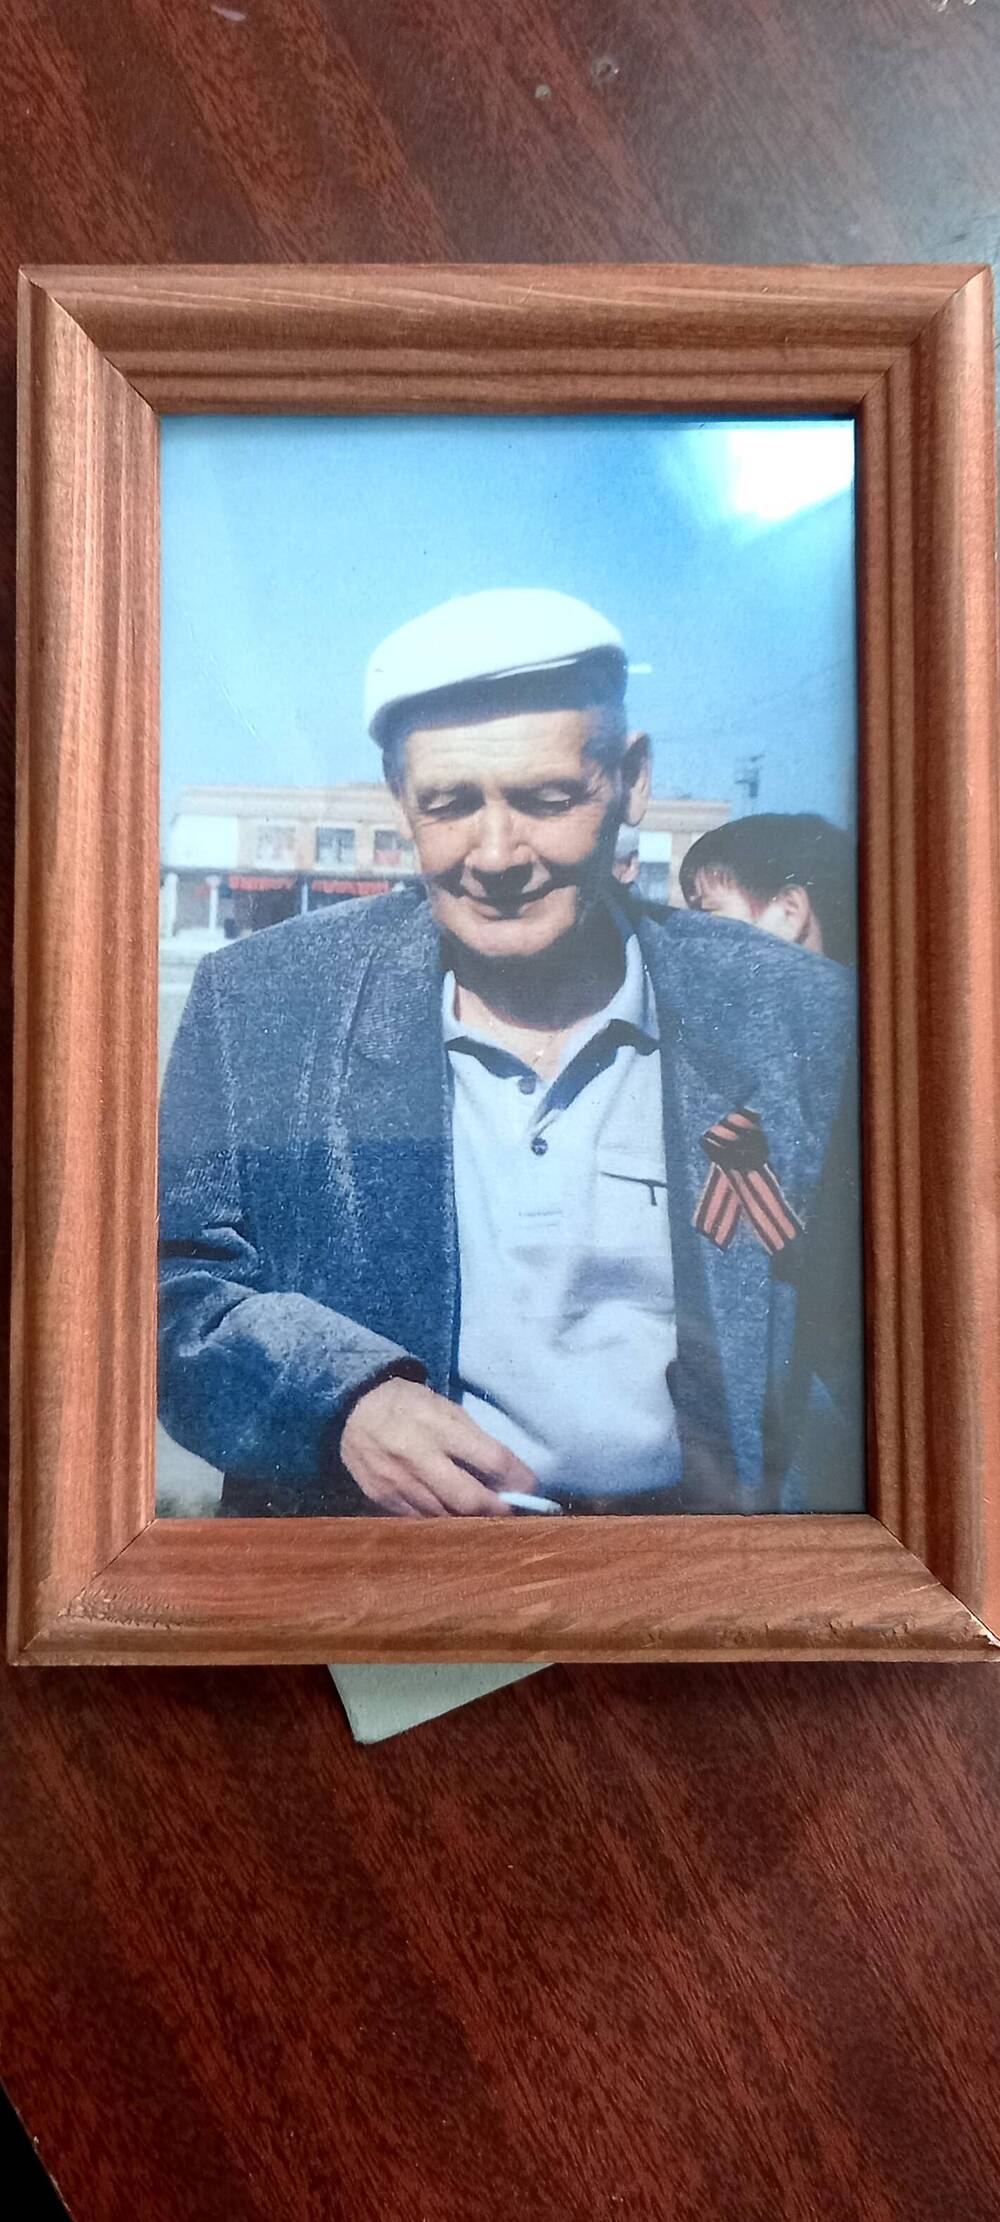 Фотография-портрет
Шишкин  Сергей  Степанович,  цветная  в  рамке  под  стеклом.